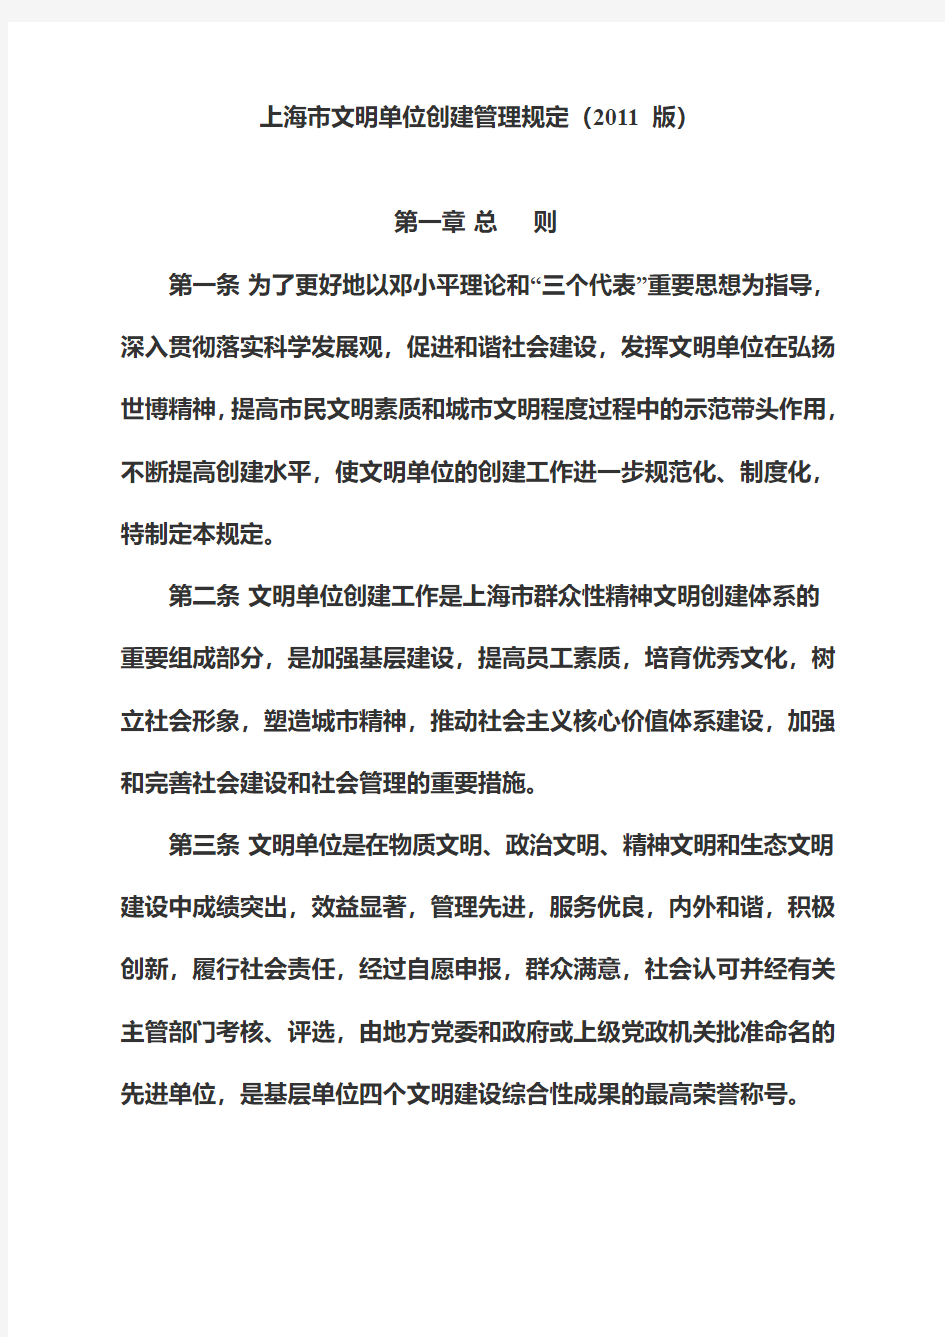 上海市文明单位创建管理规定(2011版)